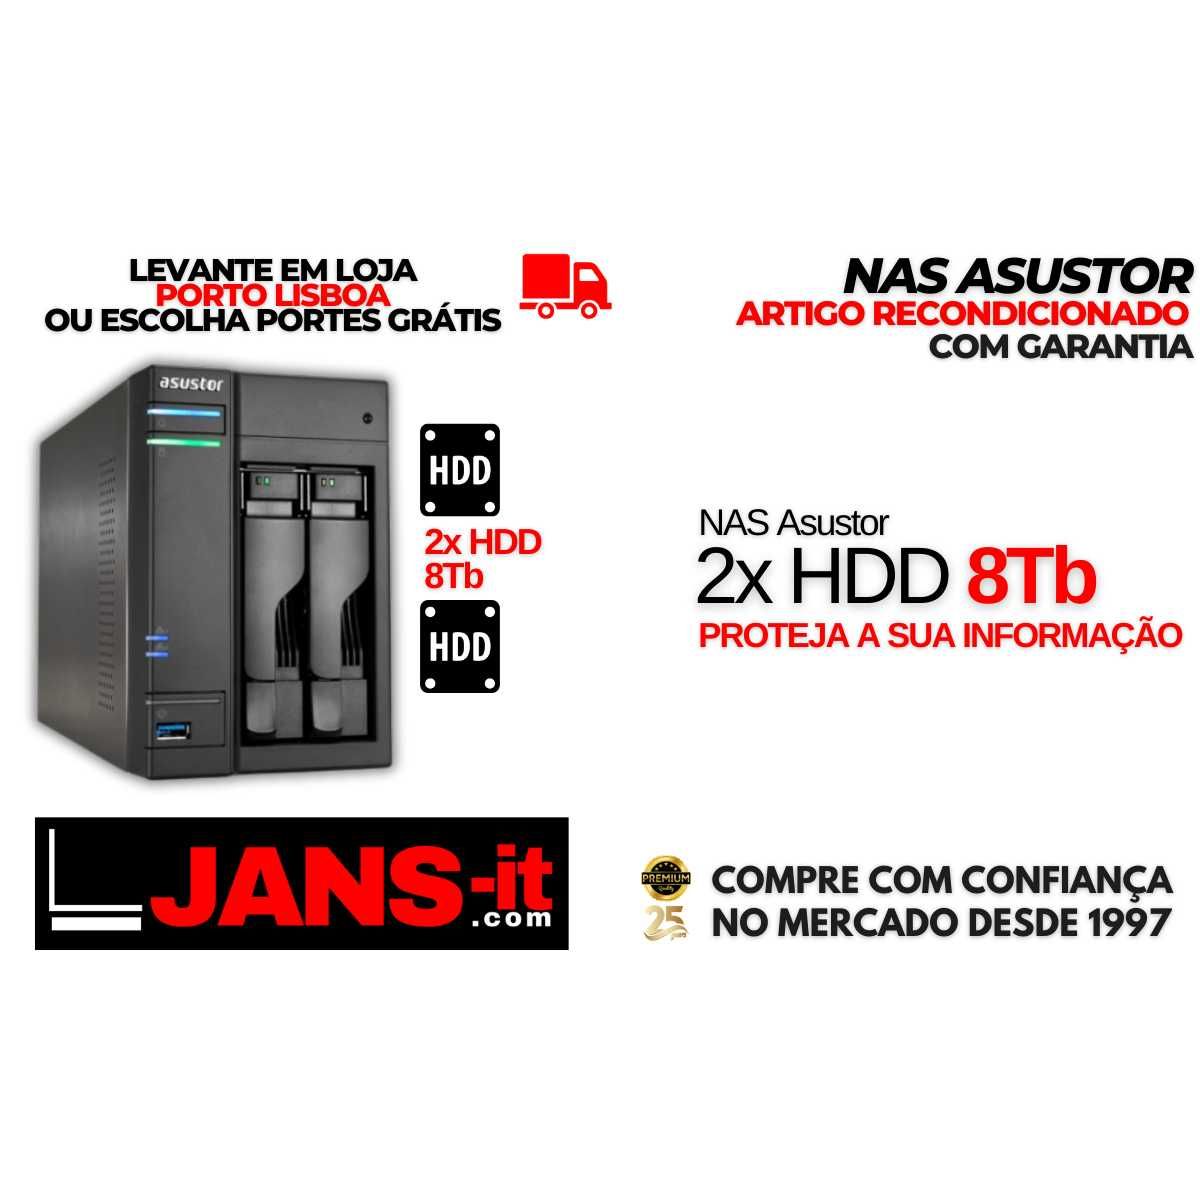 NAS Asustor - 2x HDD 8TB - O seu Backup Seguro